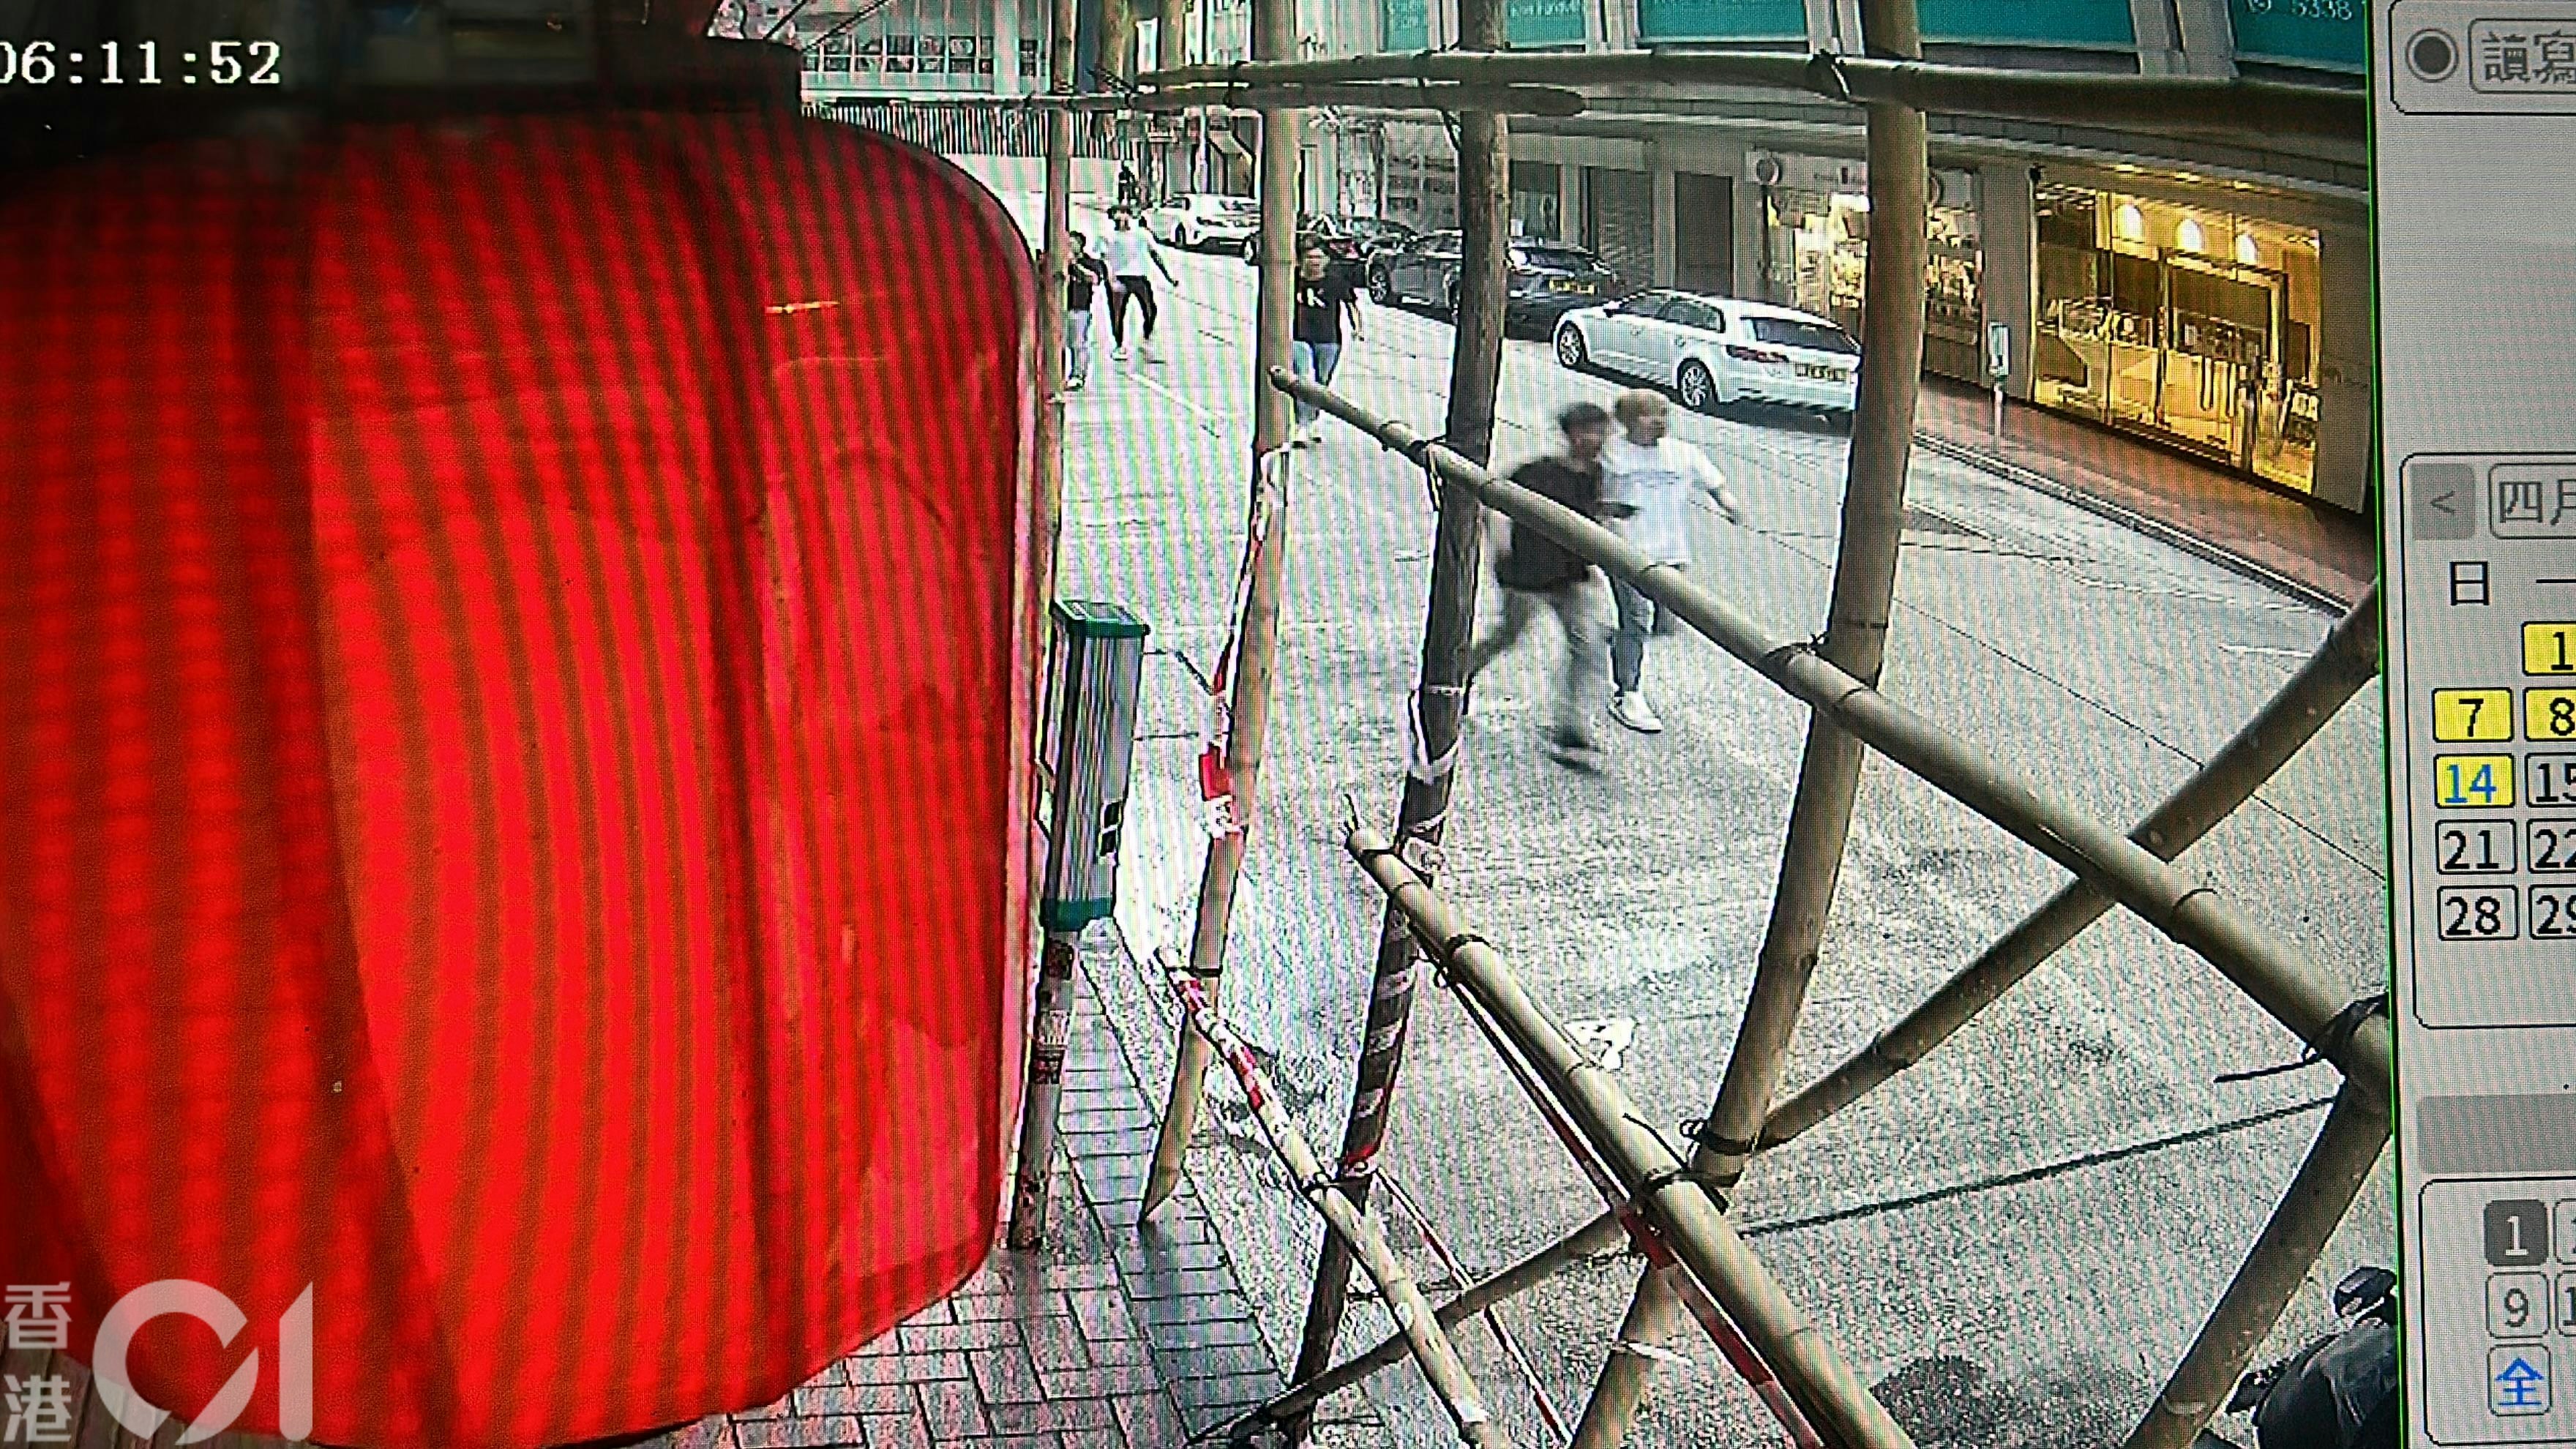 附近闭路电视拍摄到事发后多名男子在长乐街走动，疑与事件有关。